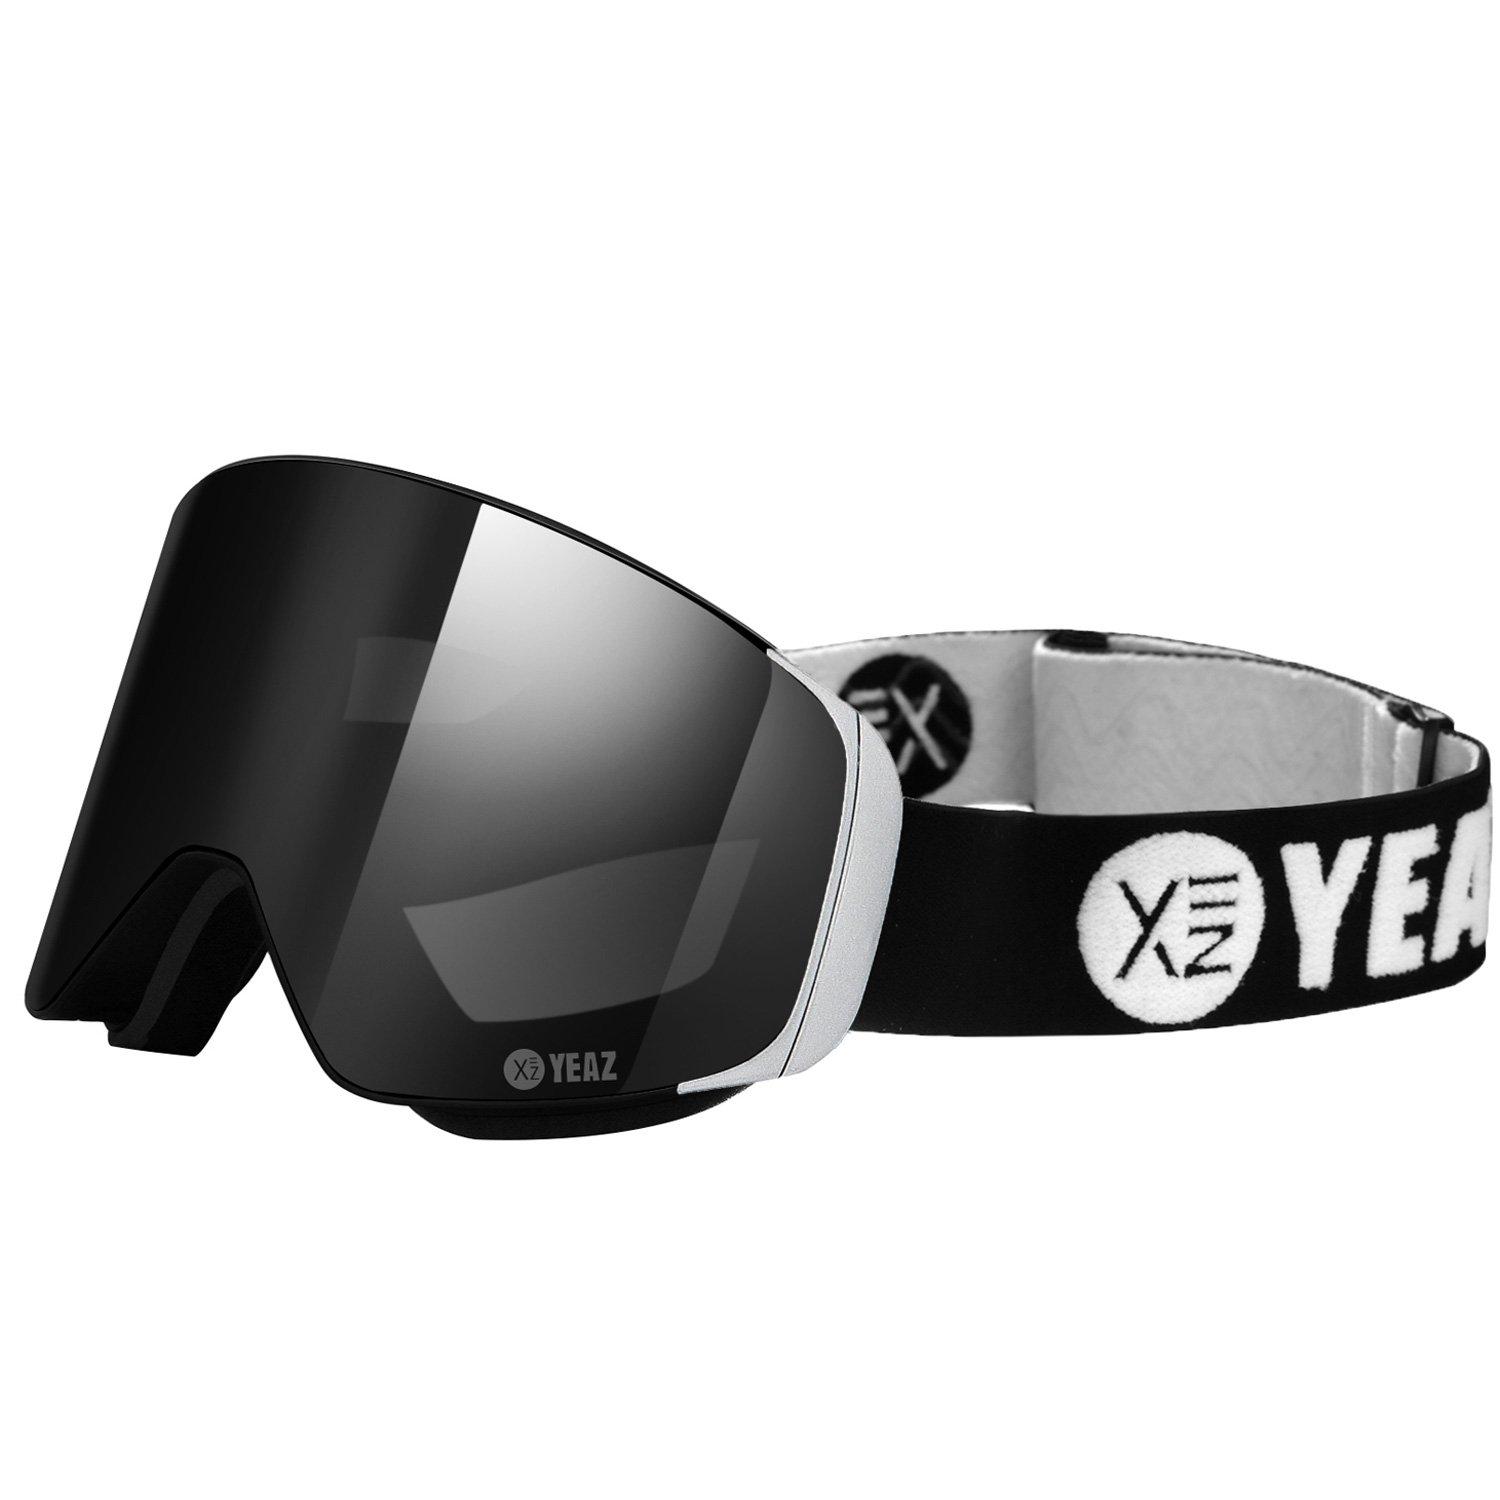 YEAZ  APEX Occhiali da sci snowboard Magnet nero/argento 